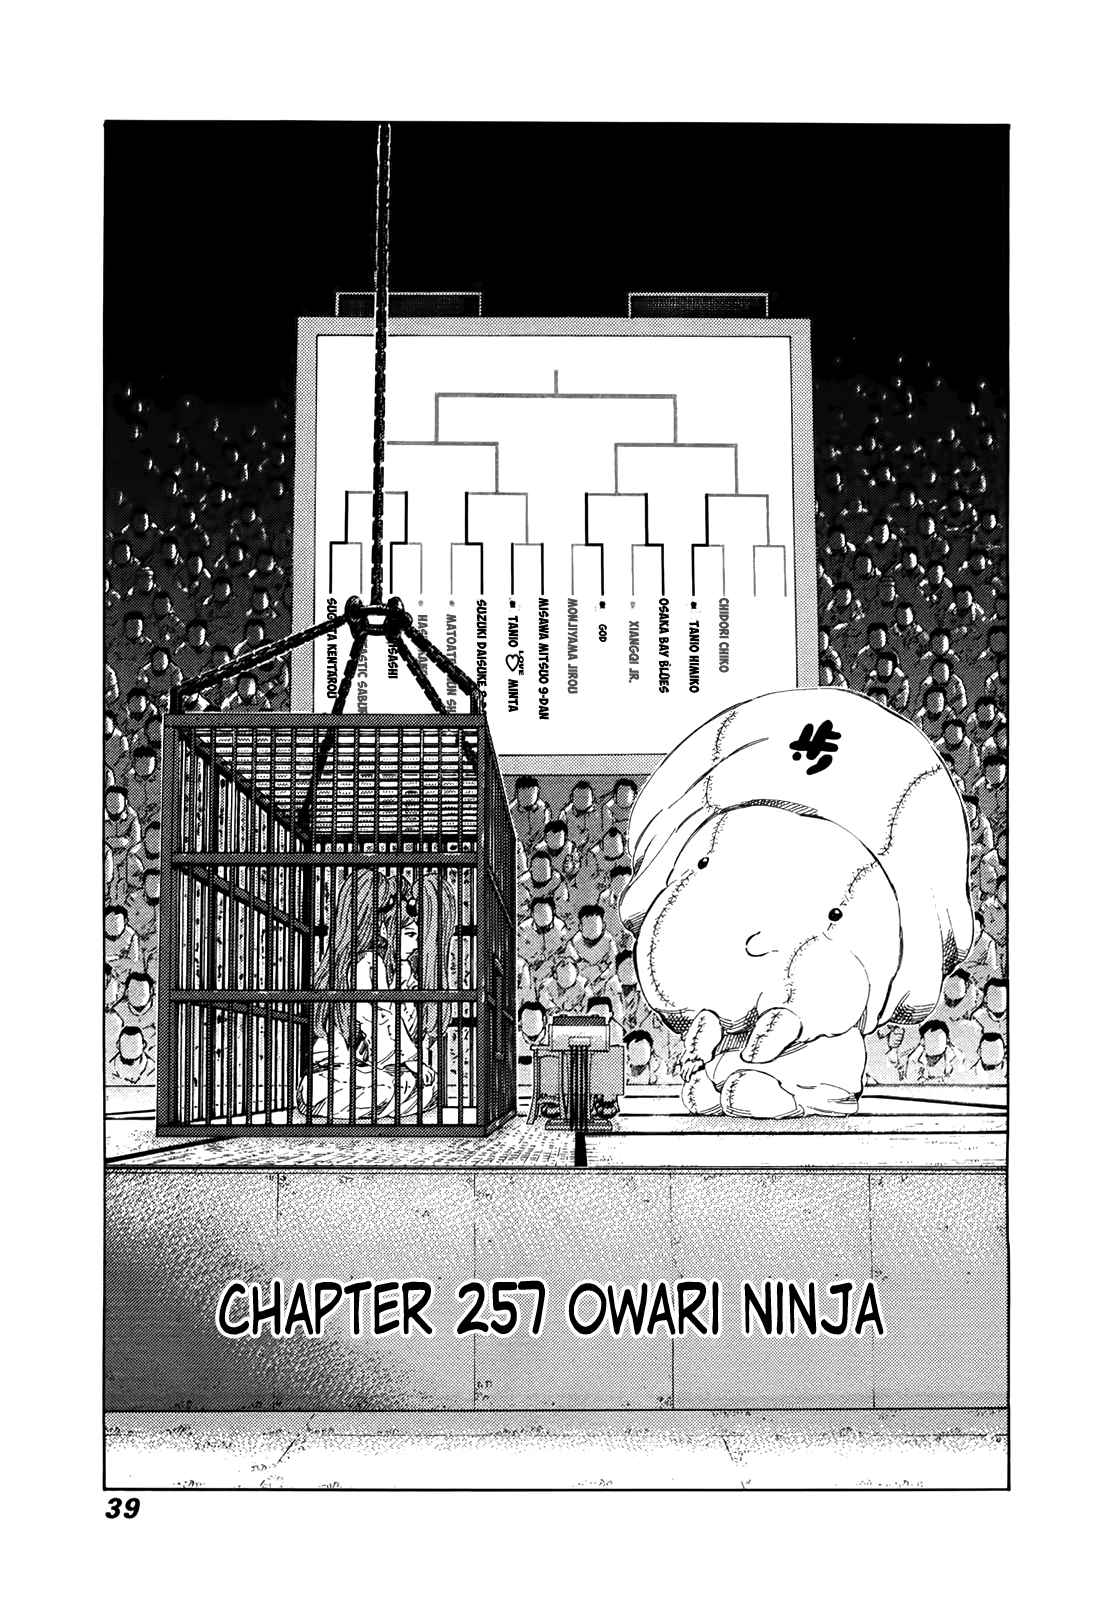 81diver Vol. 25 Ch. 257 Owari Ninja